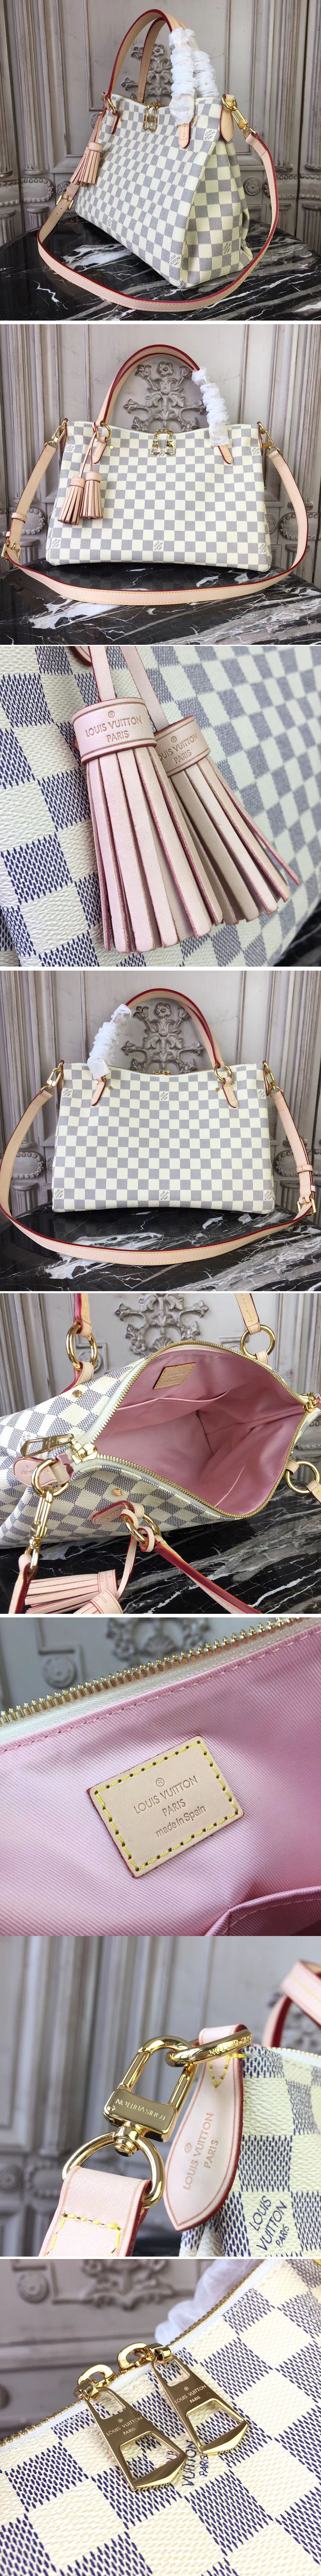 Replica Louis Vuitton N40022 Lymington Damier Azur Canvas Bags